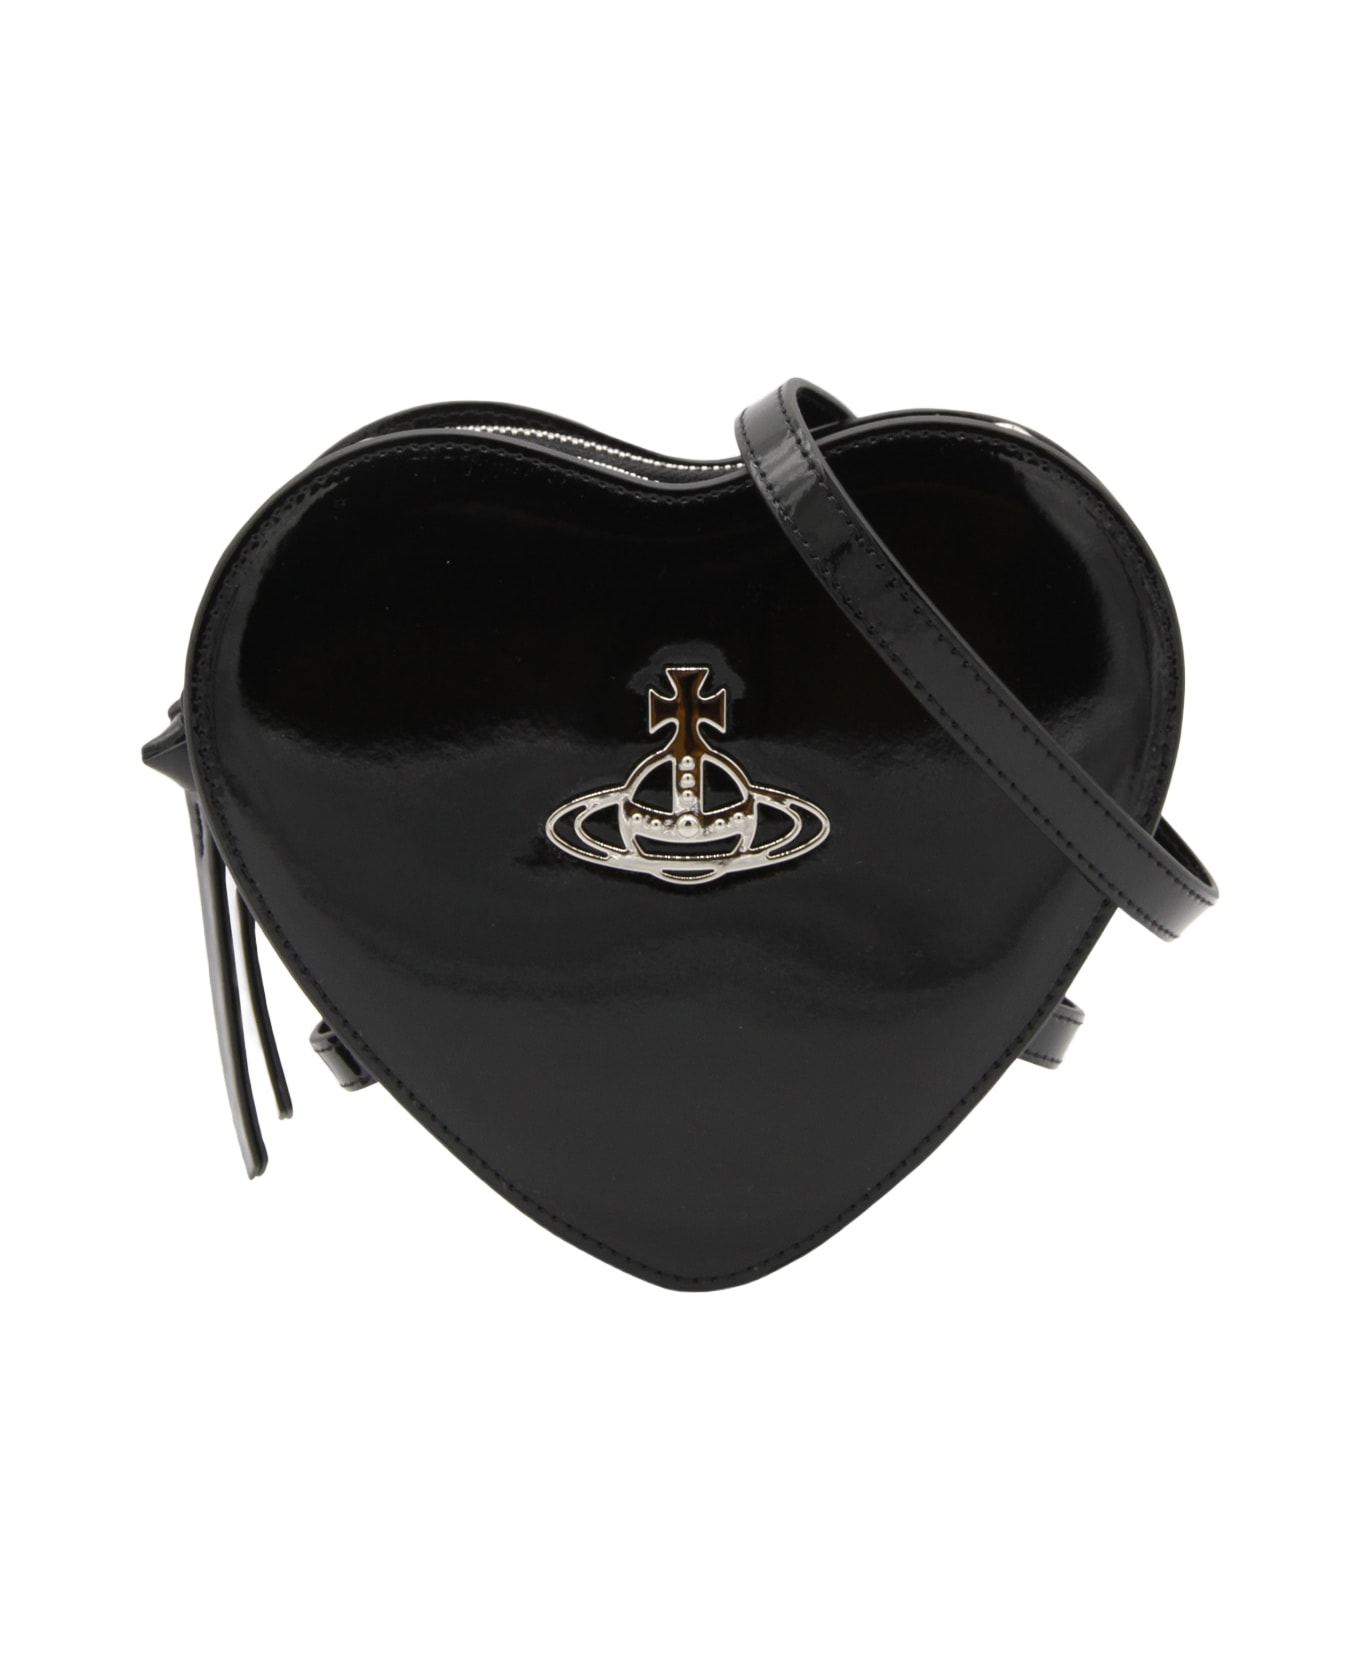 Vivienne Westwood Black Leather Bag - Black ショルダーバッグ